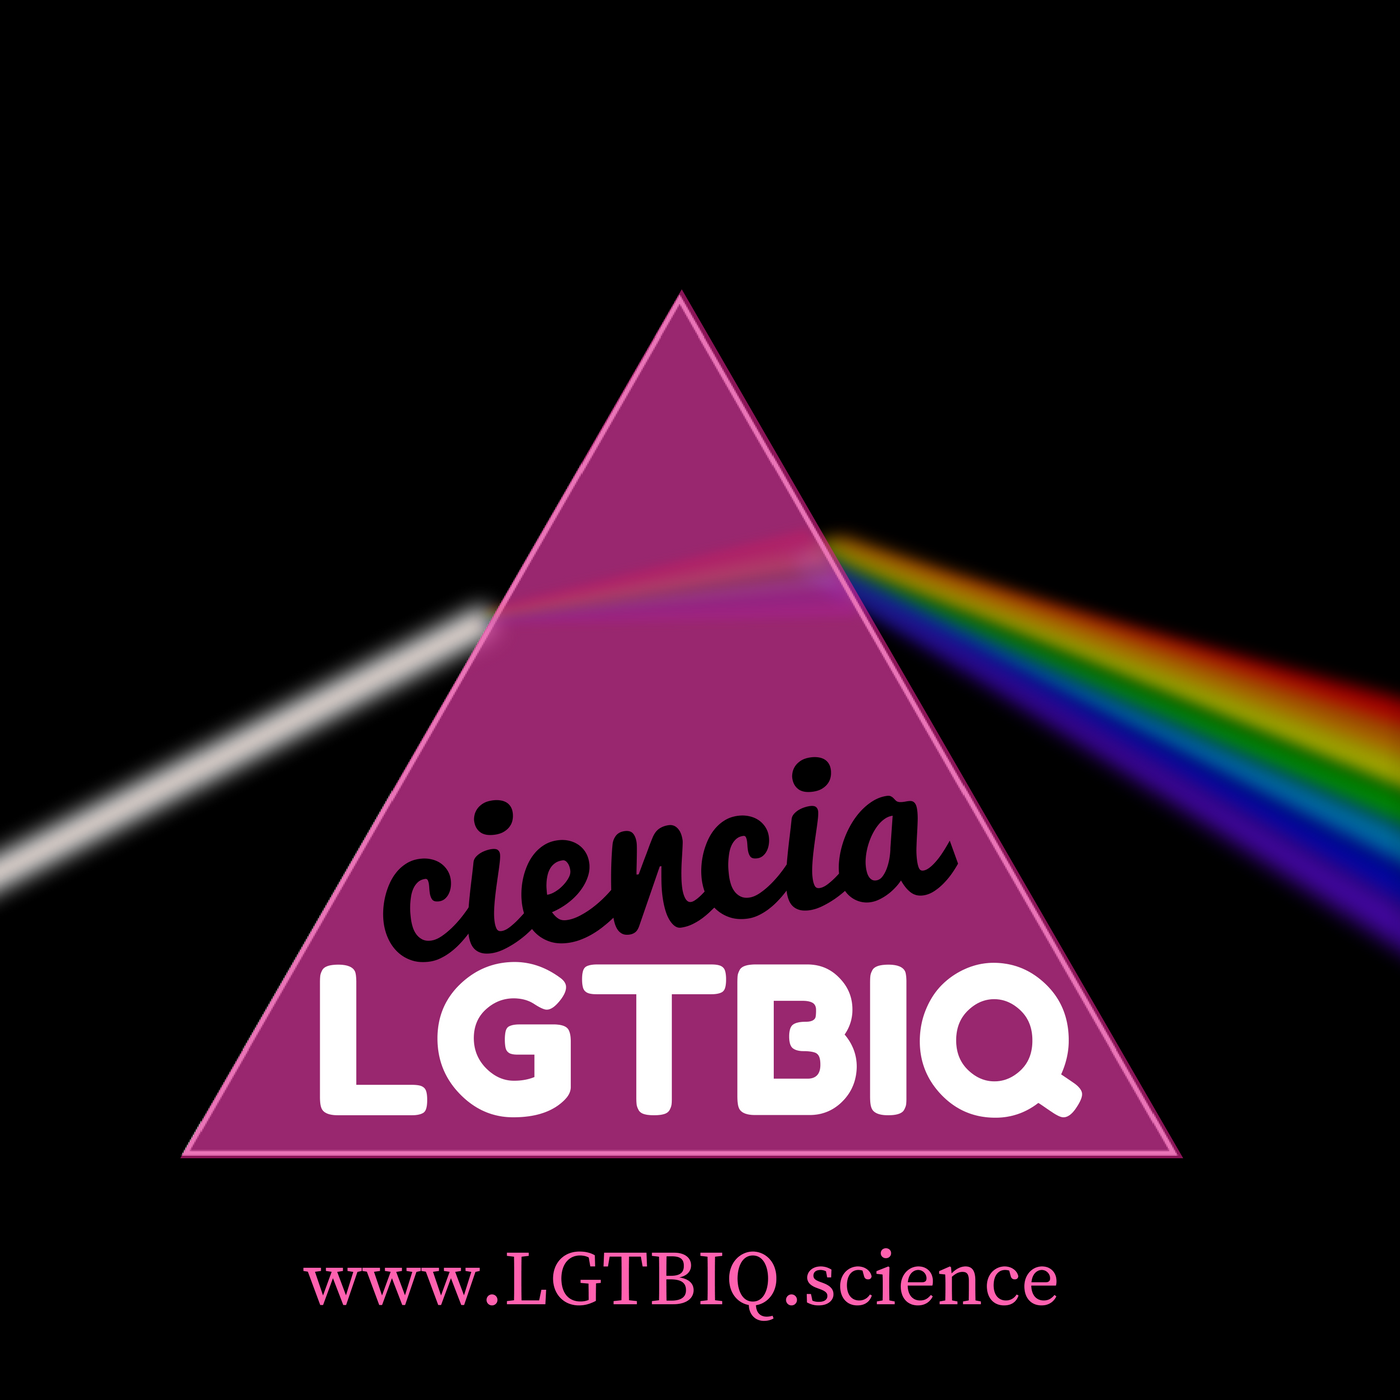 cienciaLGTBIQ_logo